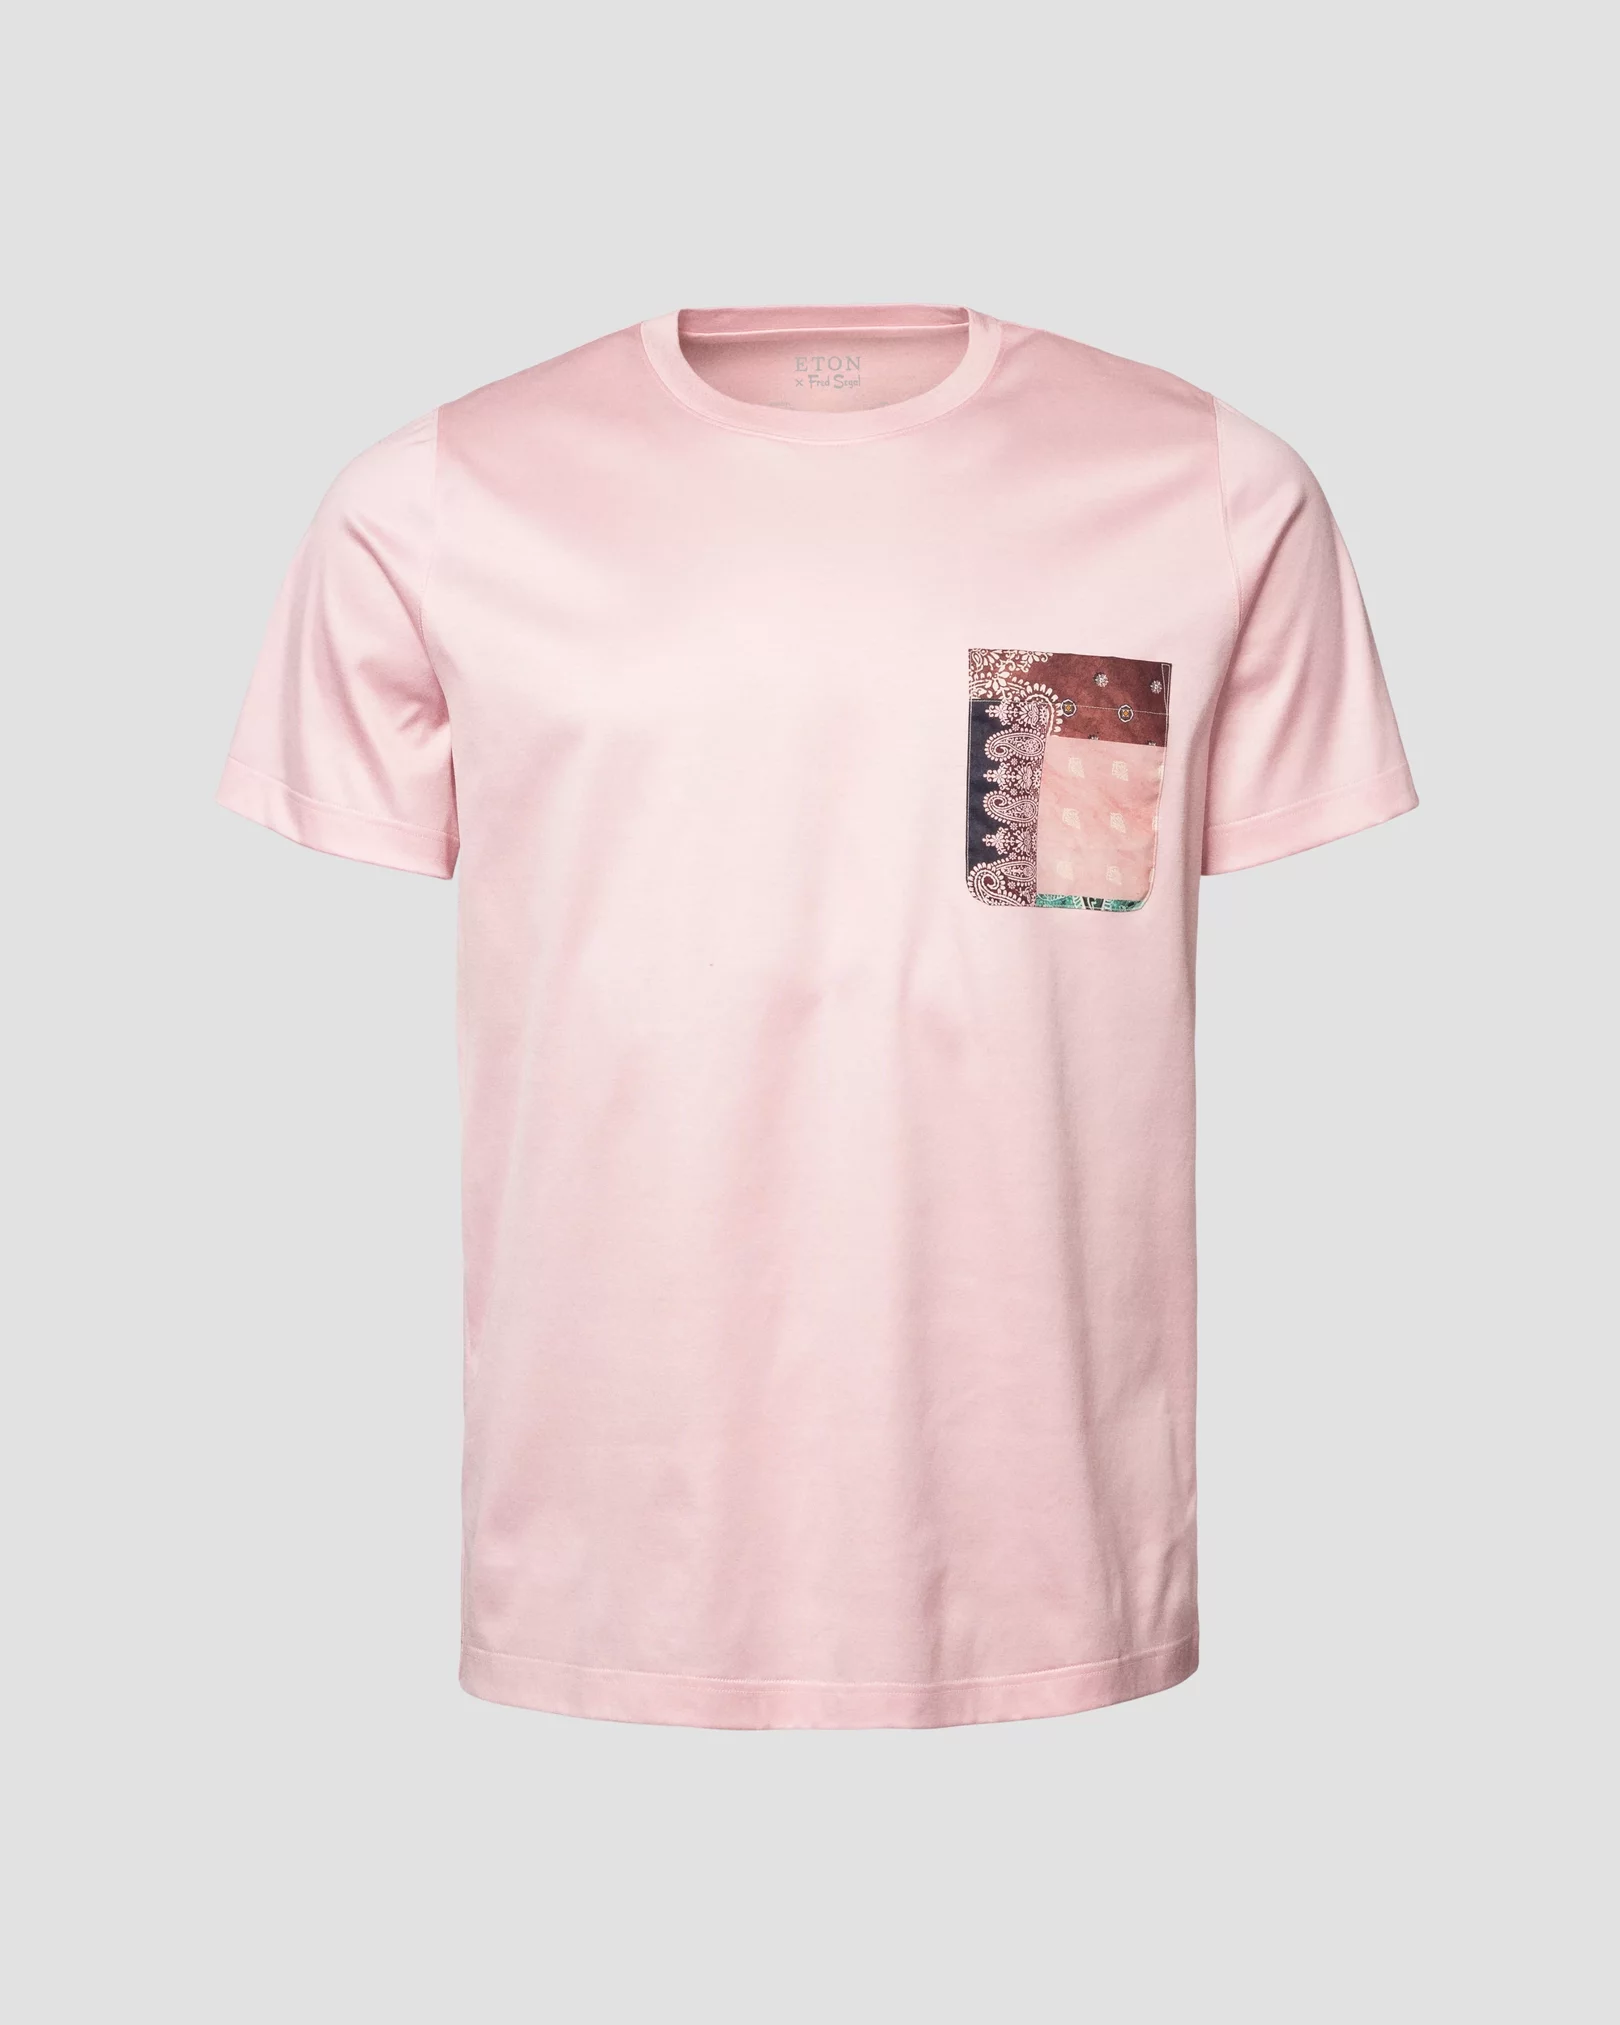 T-shirt rose en fil d’Écosse, édition spéciale